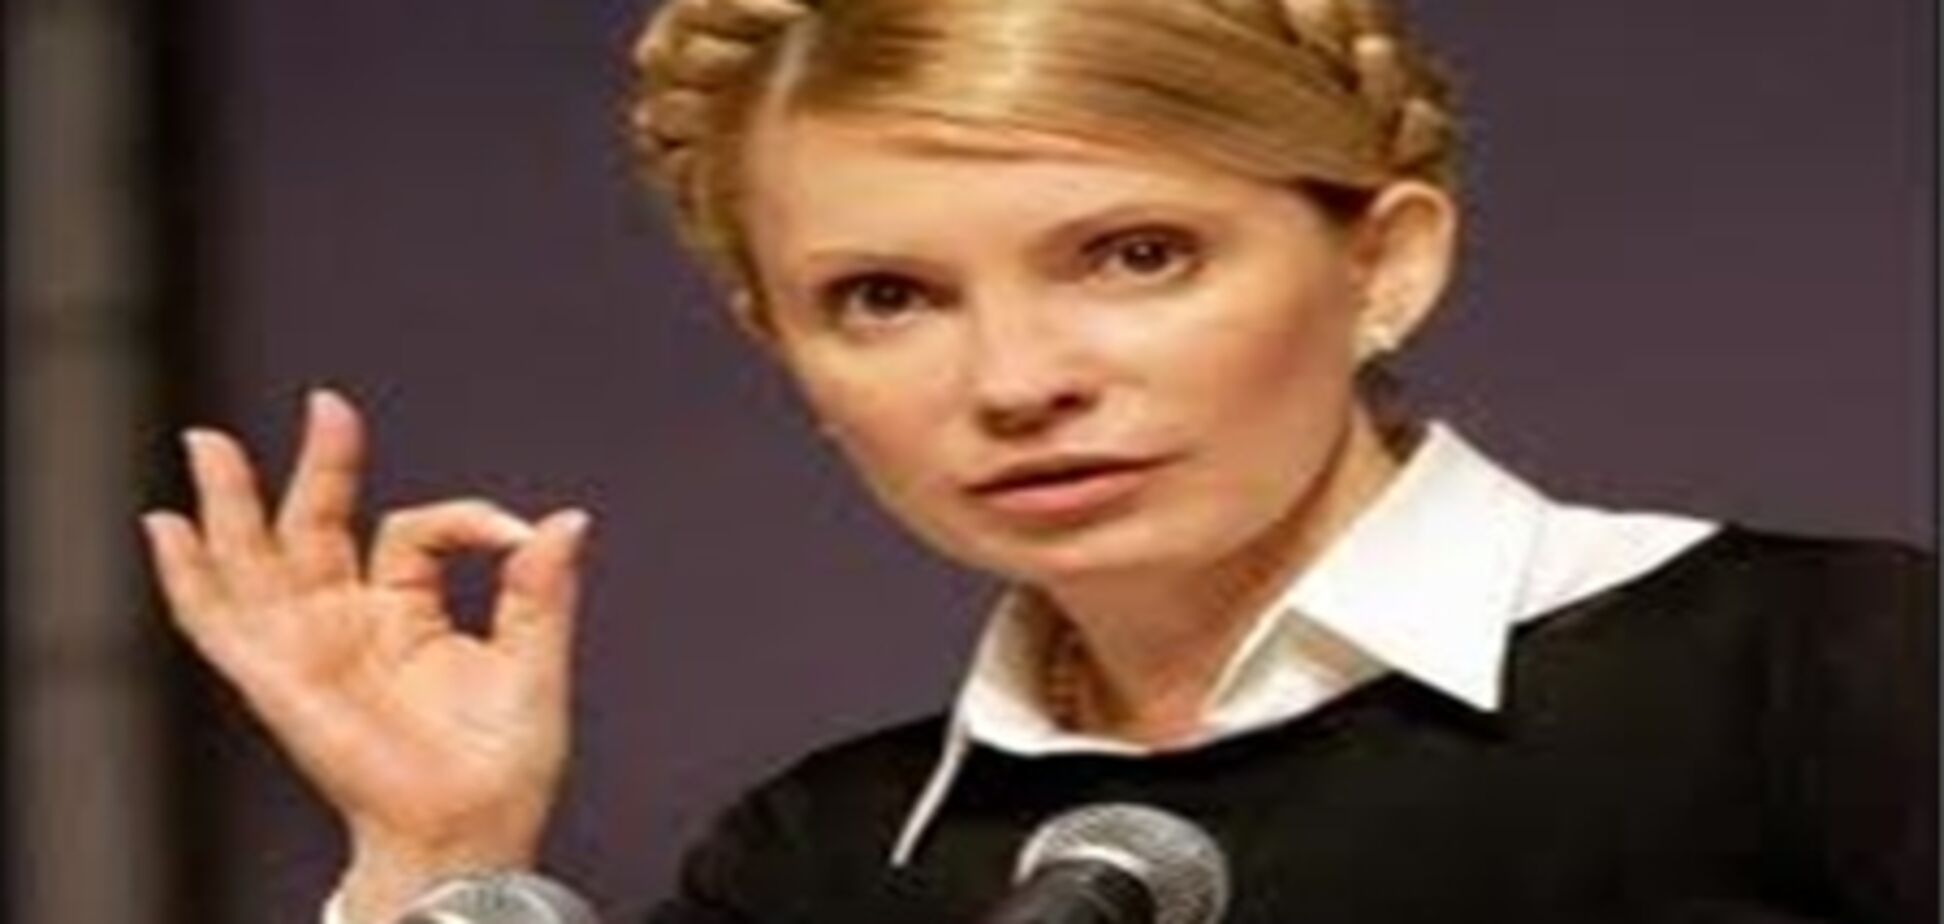 Комфорт на зоне обойдется от $300, а сидеть в СИЗО, как Тимошенко, — от $1000